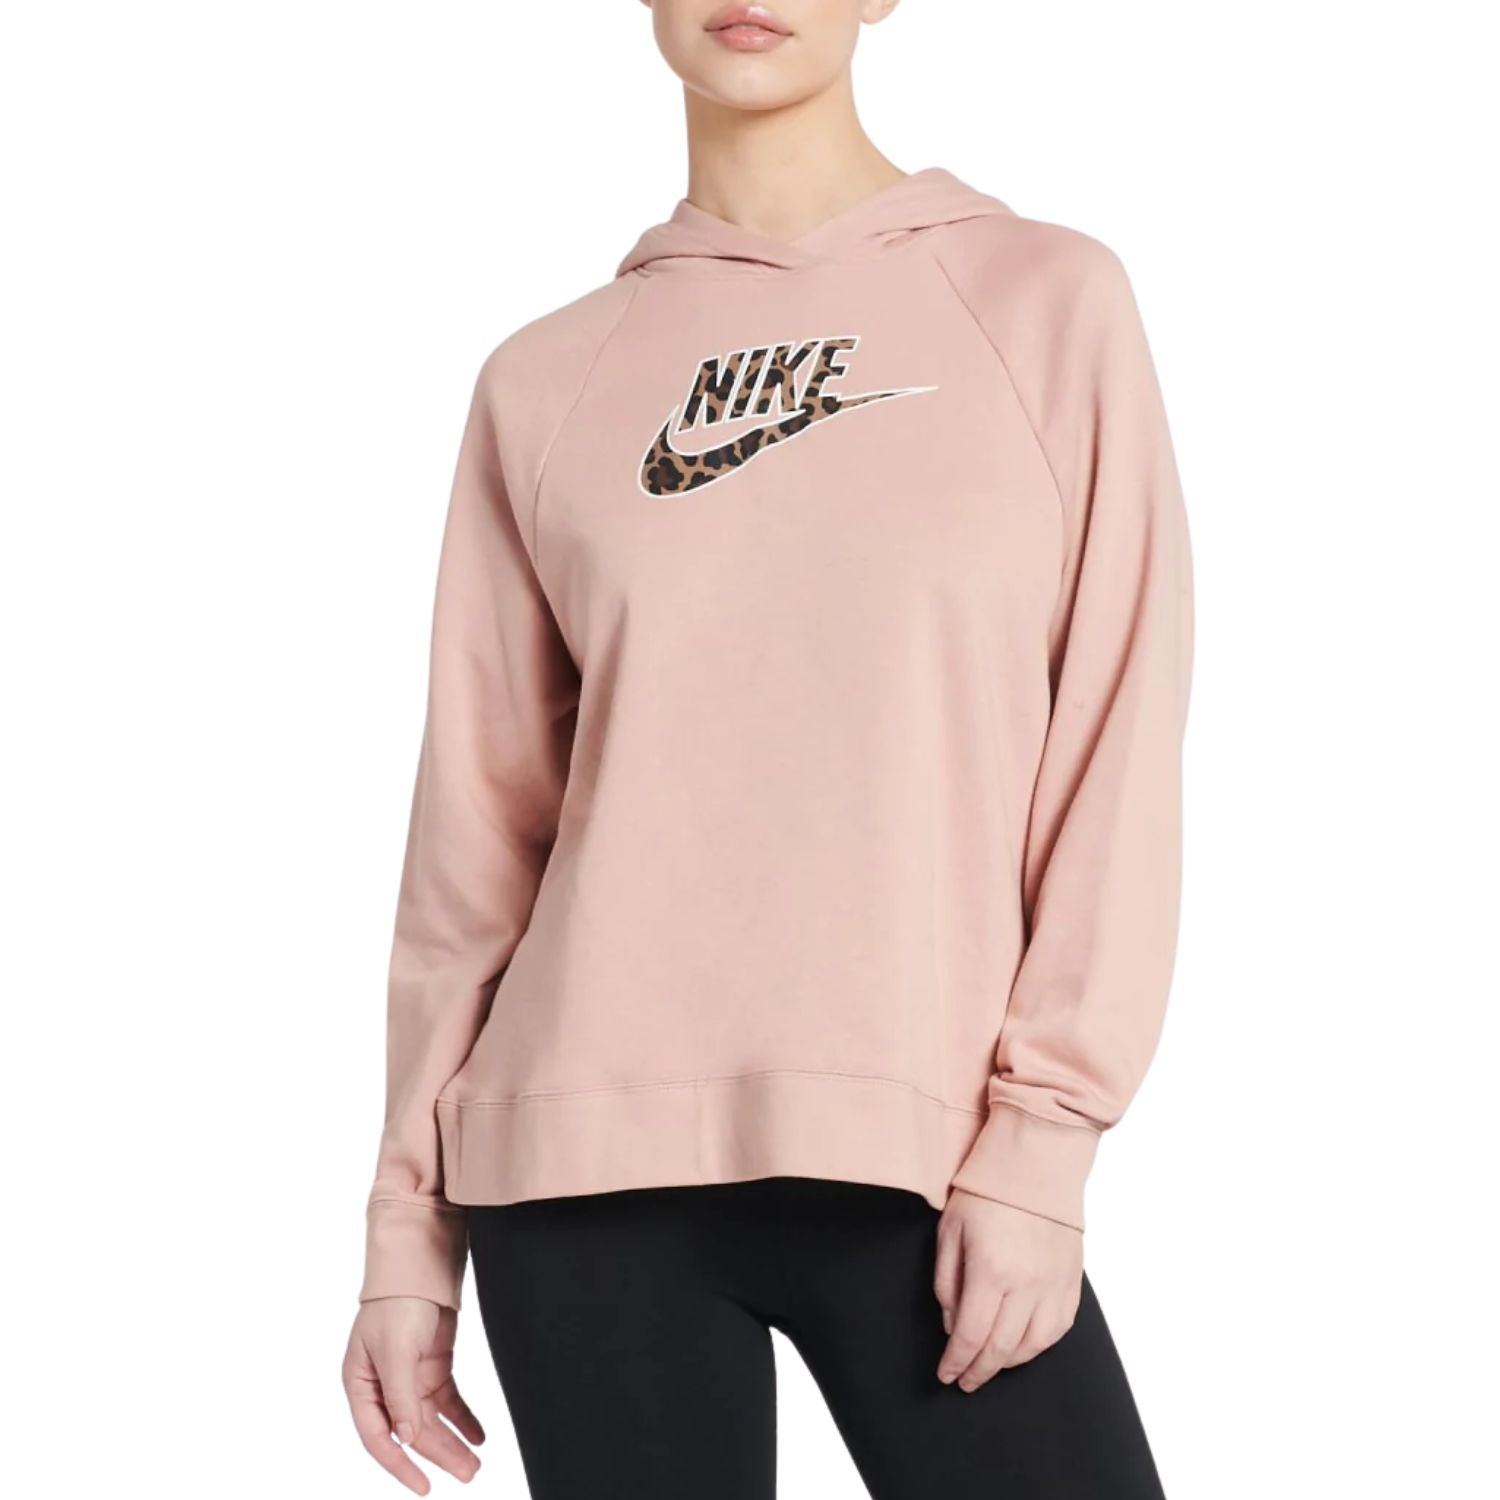 Nike Sportswear Pullover Hoodie Mens Style : Dm6311